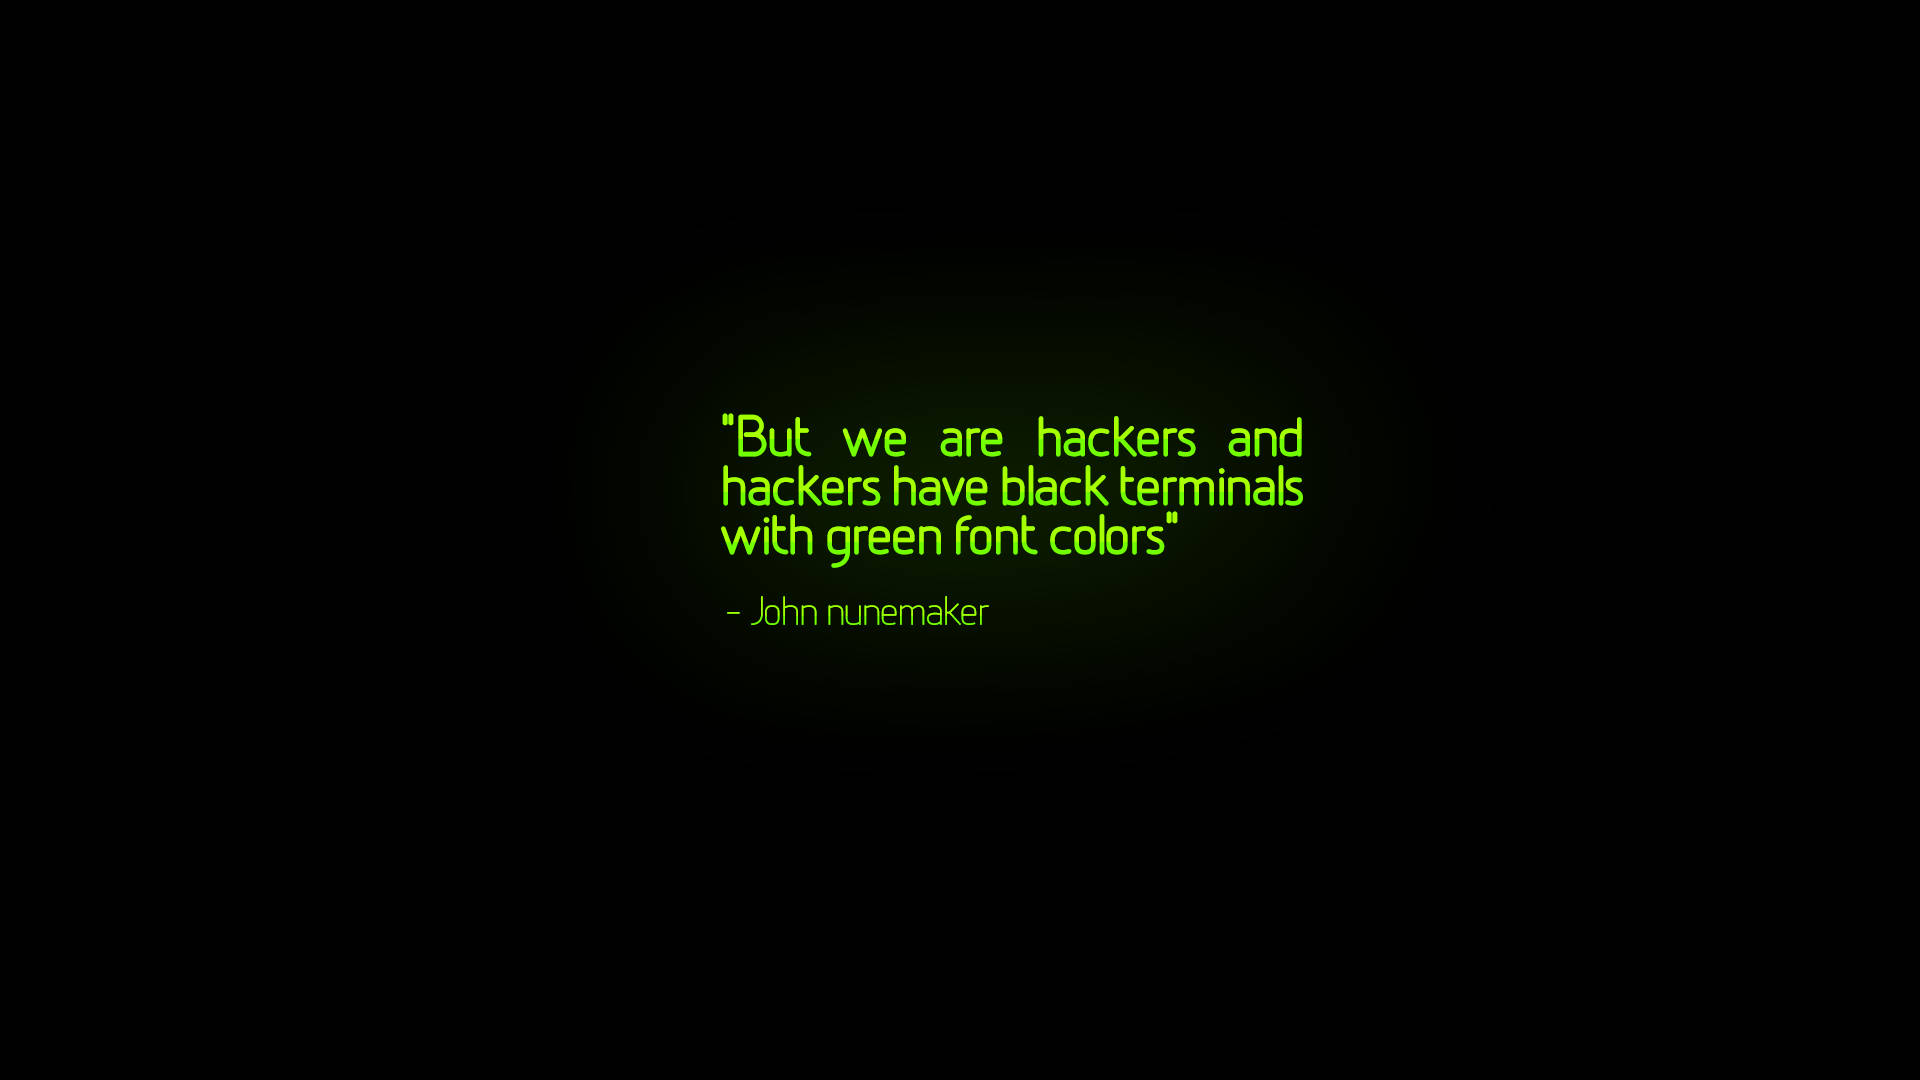 Hacker Green Font Full Hd